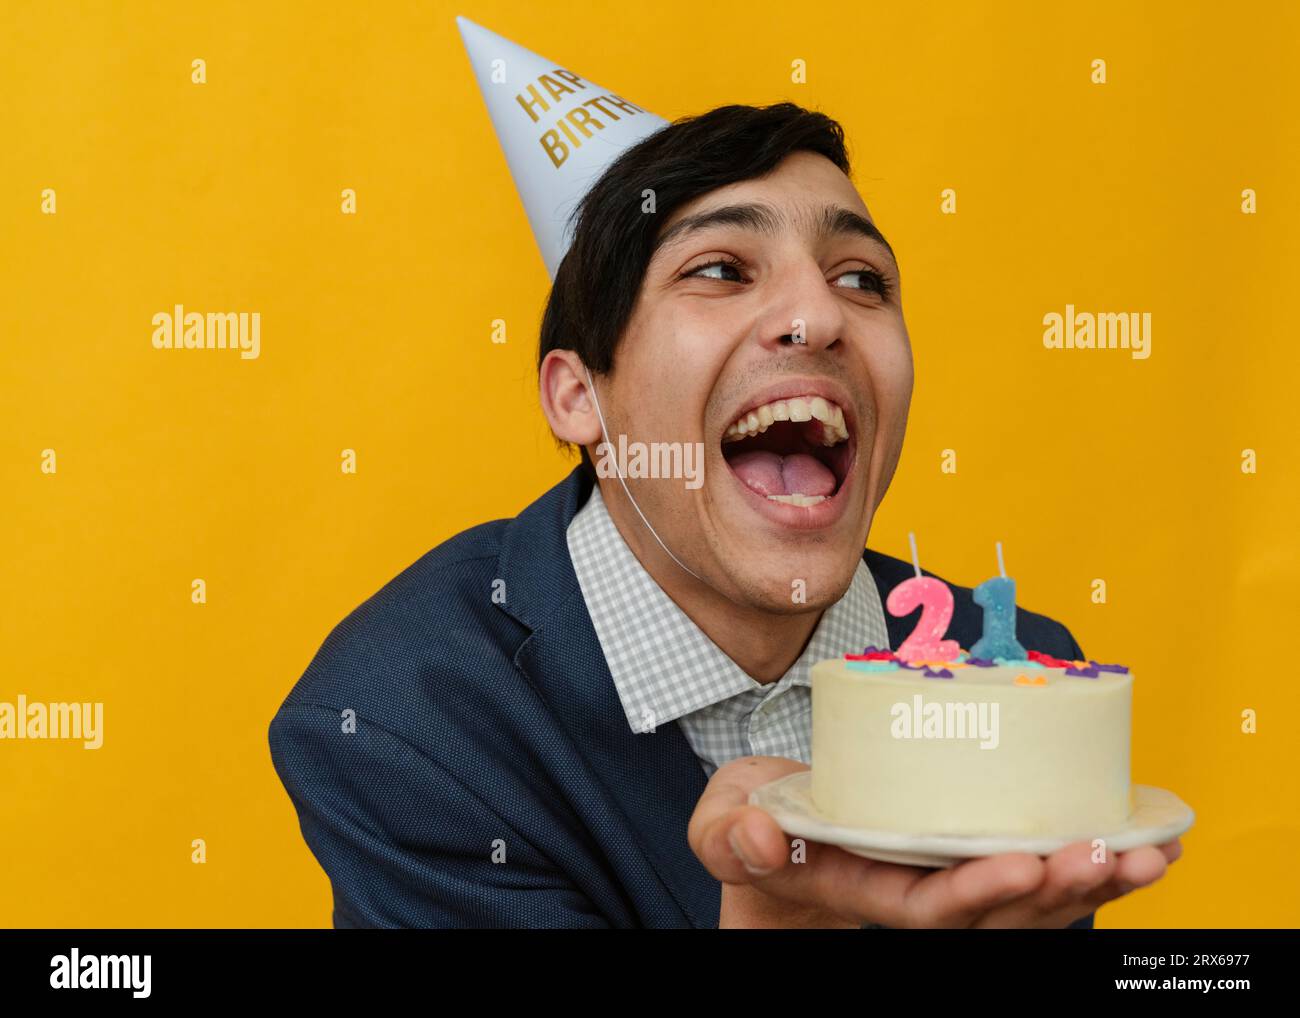 Cheerful man holding 21st birthday cake in studio Stock Photo